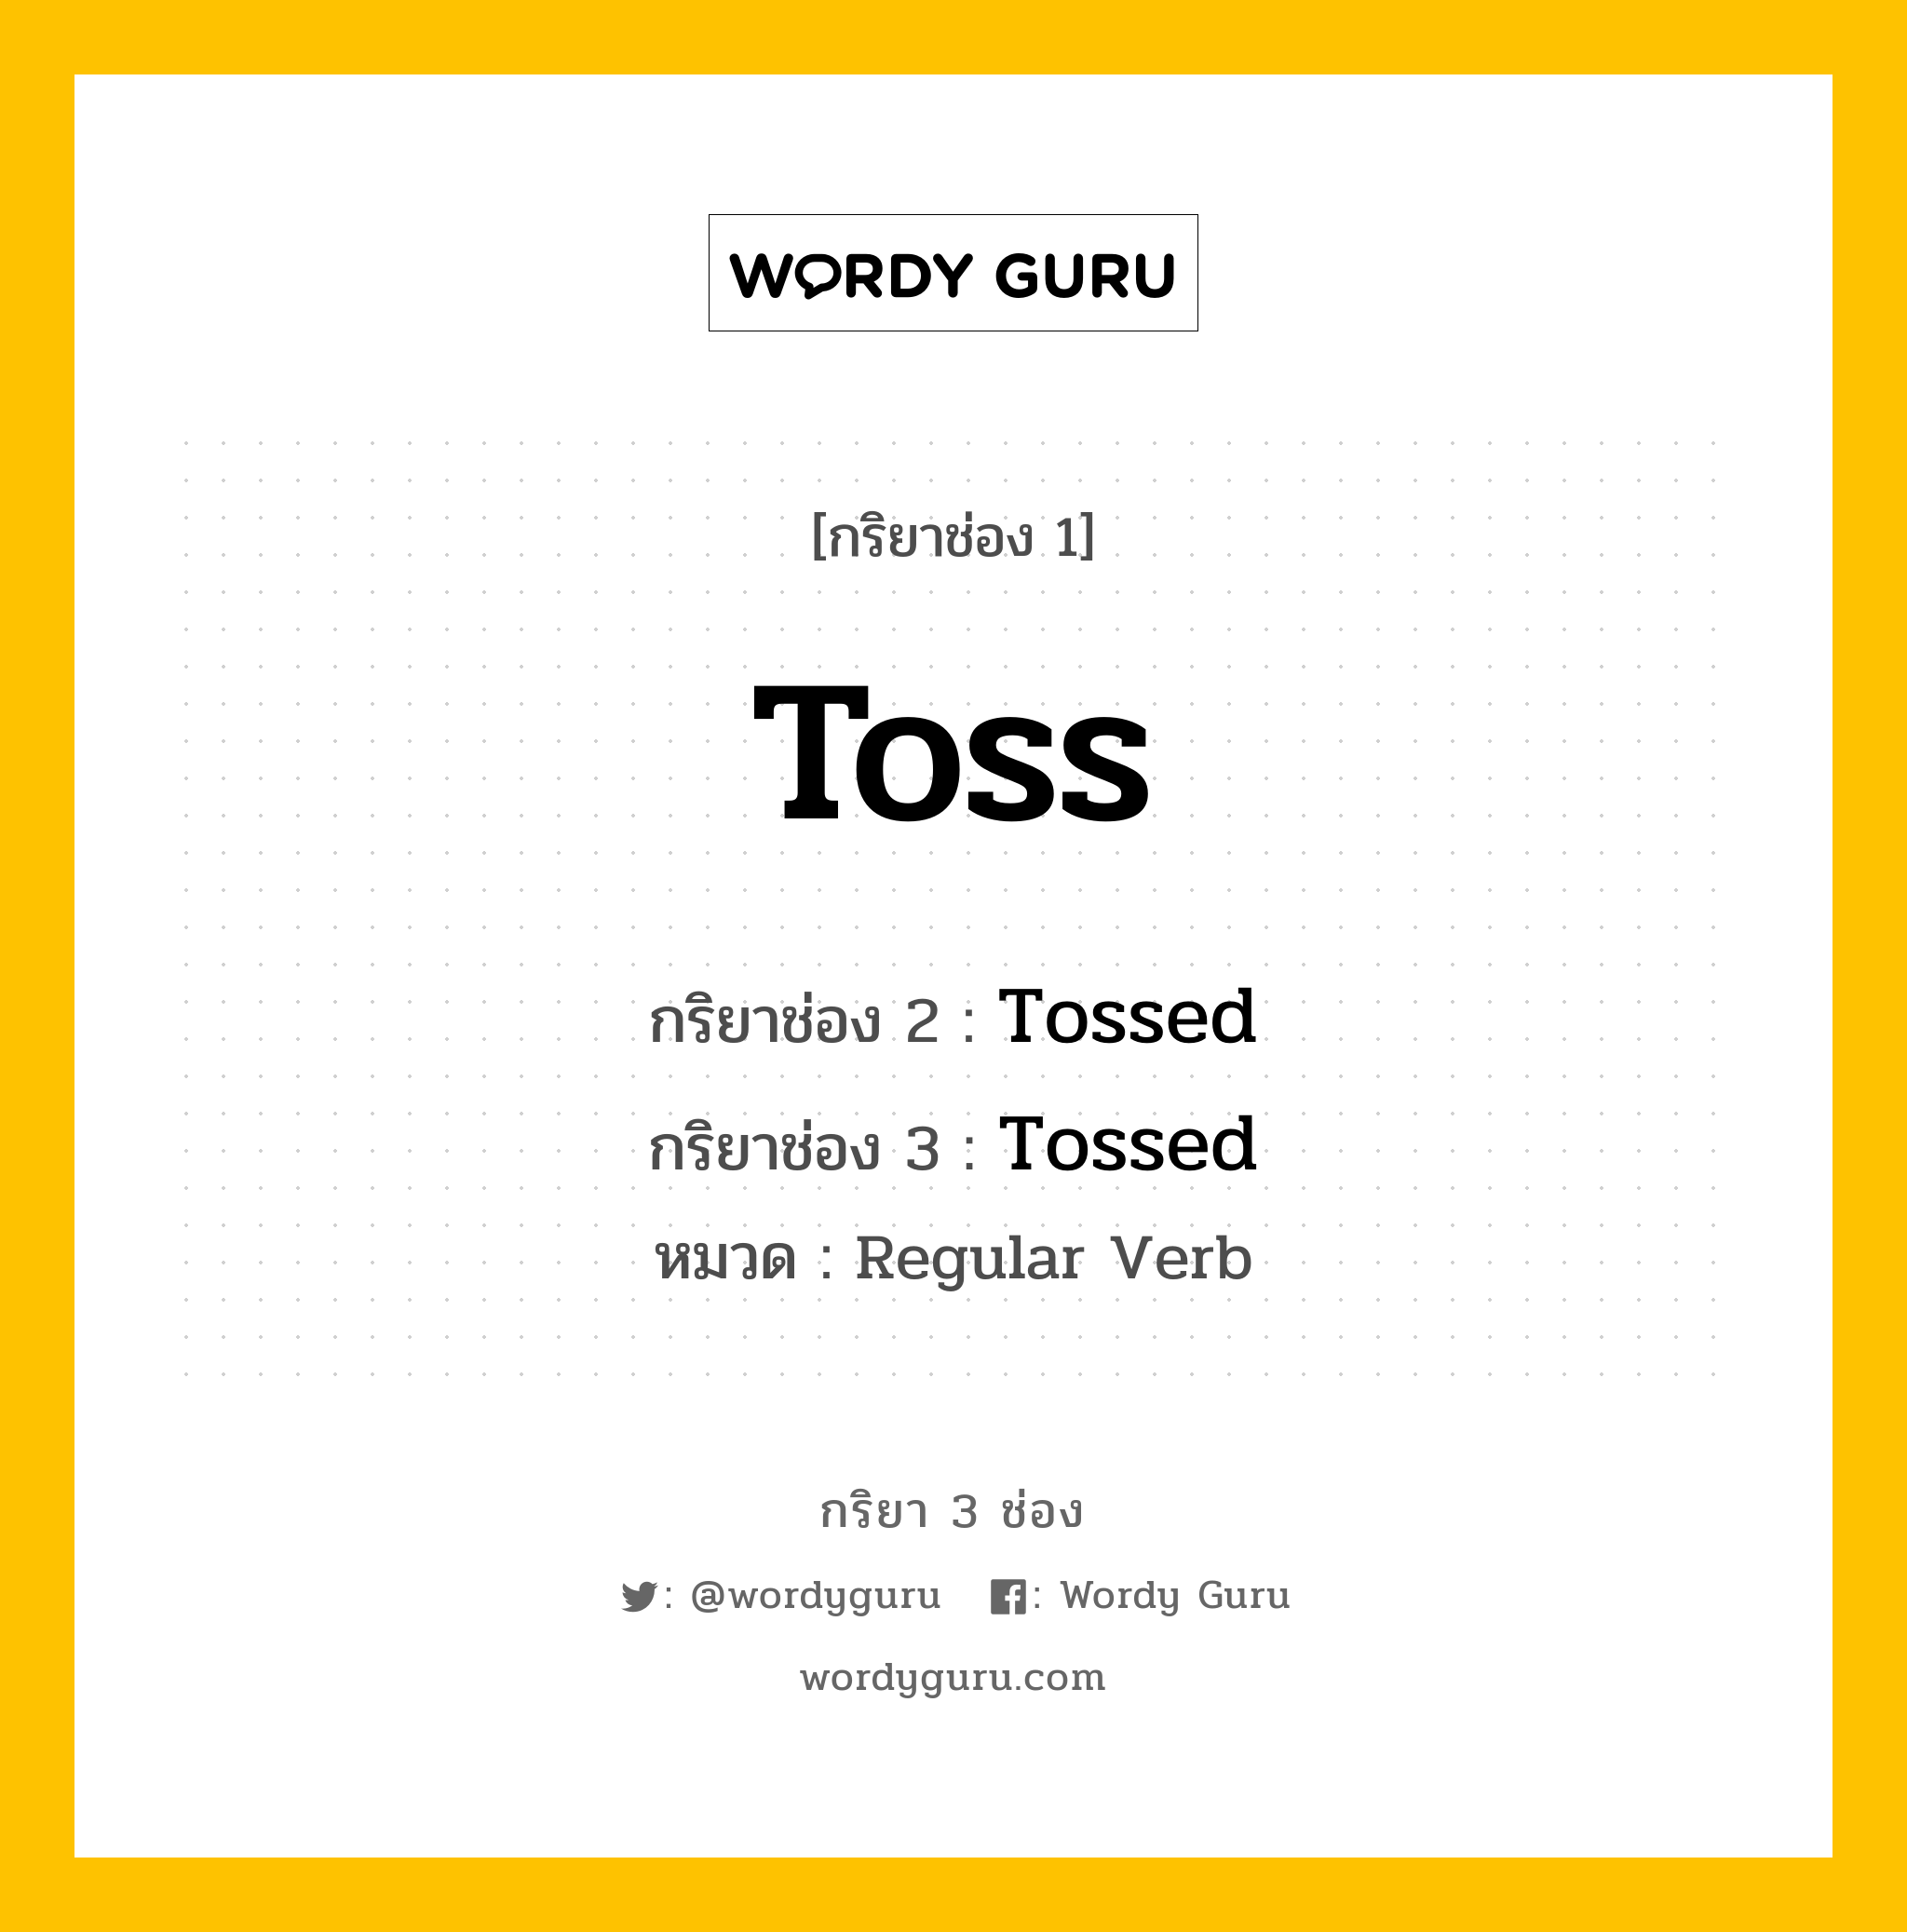 กริยา 3 ช่อง: Toss ช่อง 2 Toss ช่อง 3 คืออะไร, กริยาช่อง 1 Toss กริยาช่อง 2 Tossed กริยาช่อง 3 Tossed หมวด Regular Verb หมวด Regular Verb